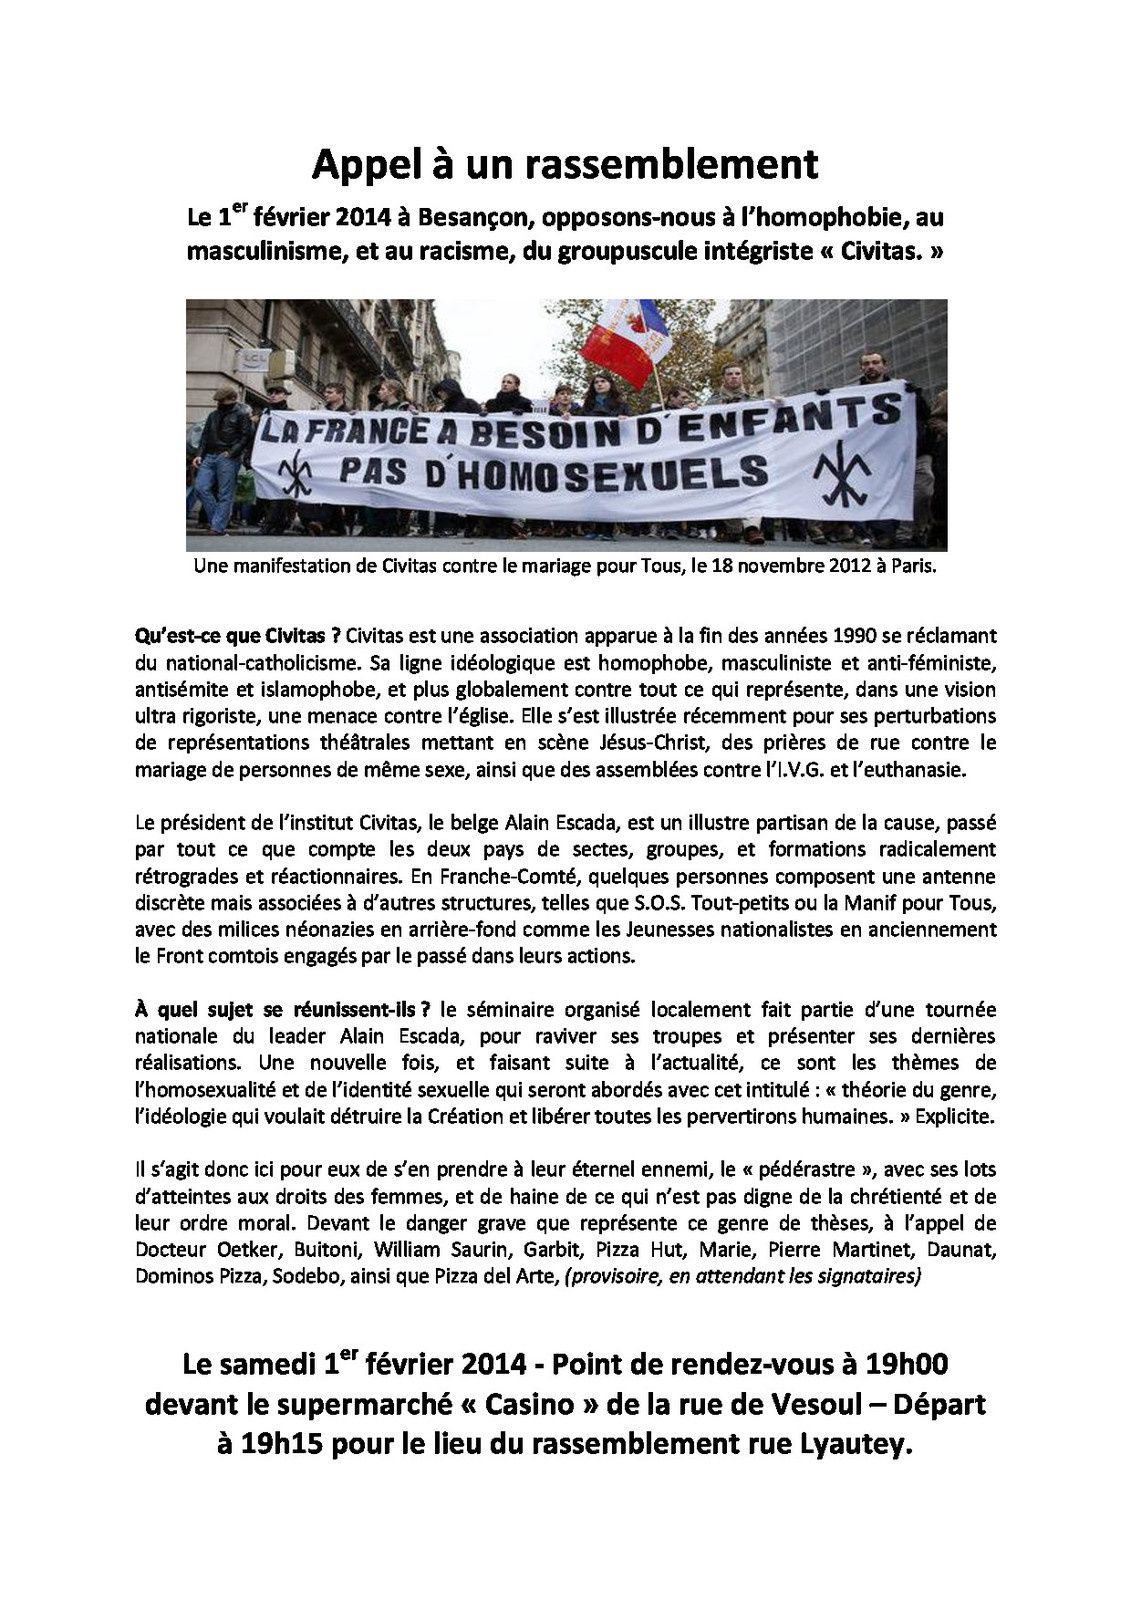 Appel à manifester contre Civitas /1 février à Besançon